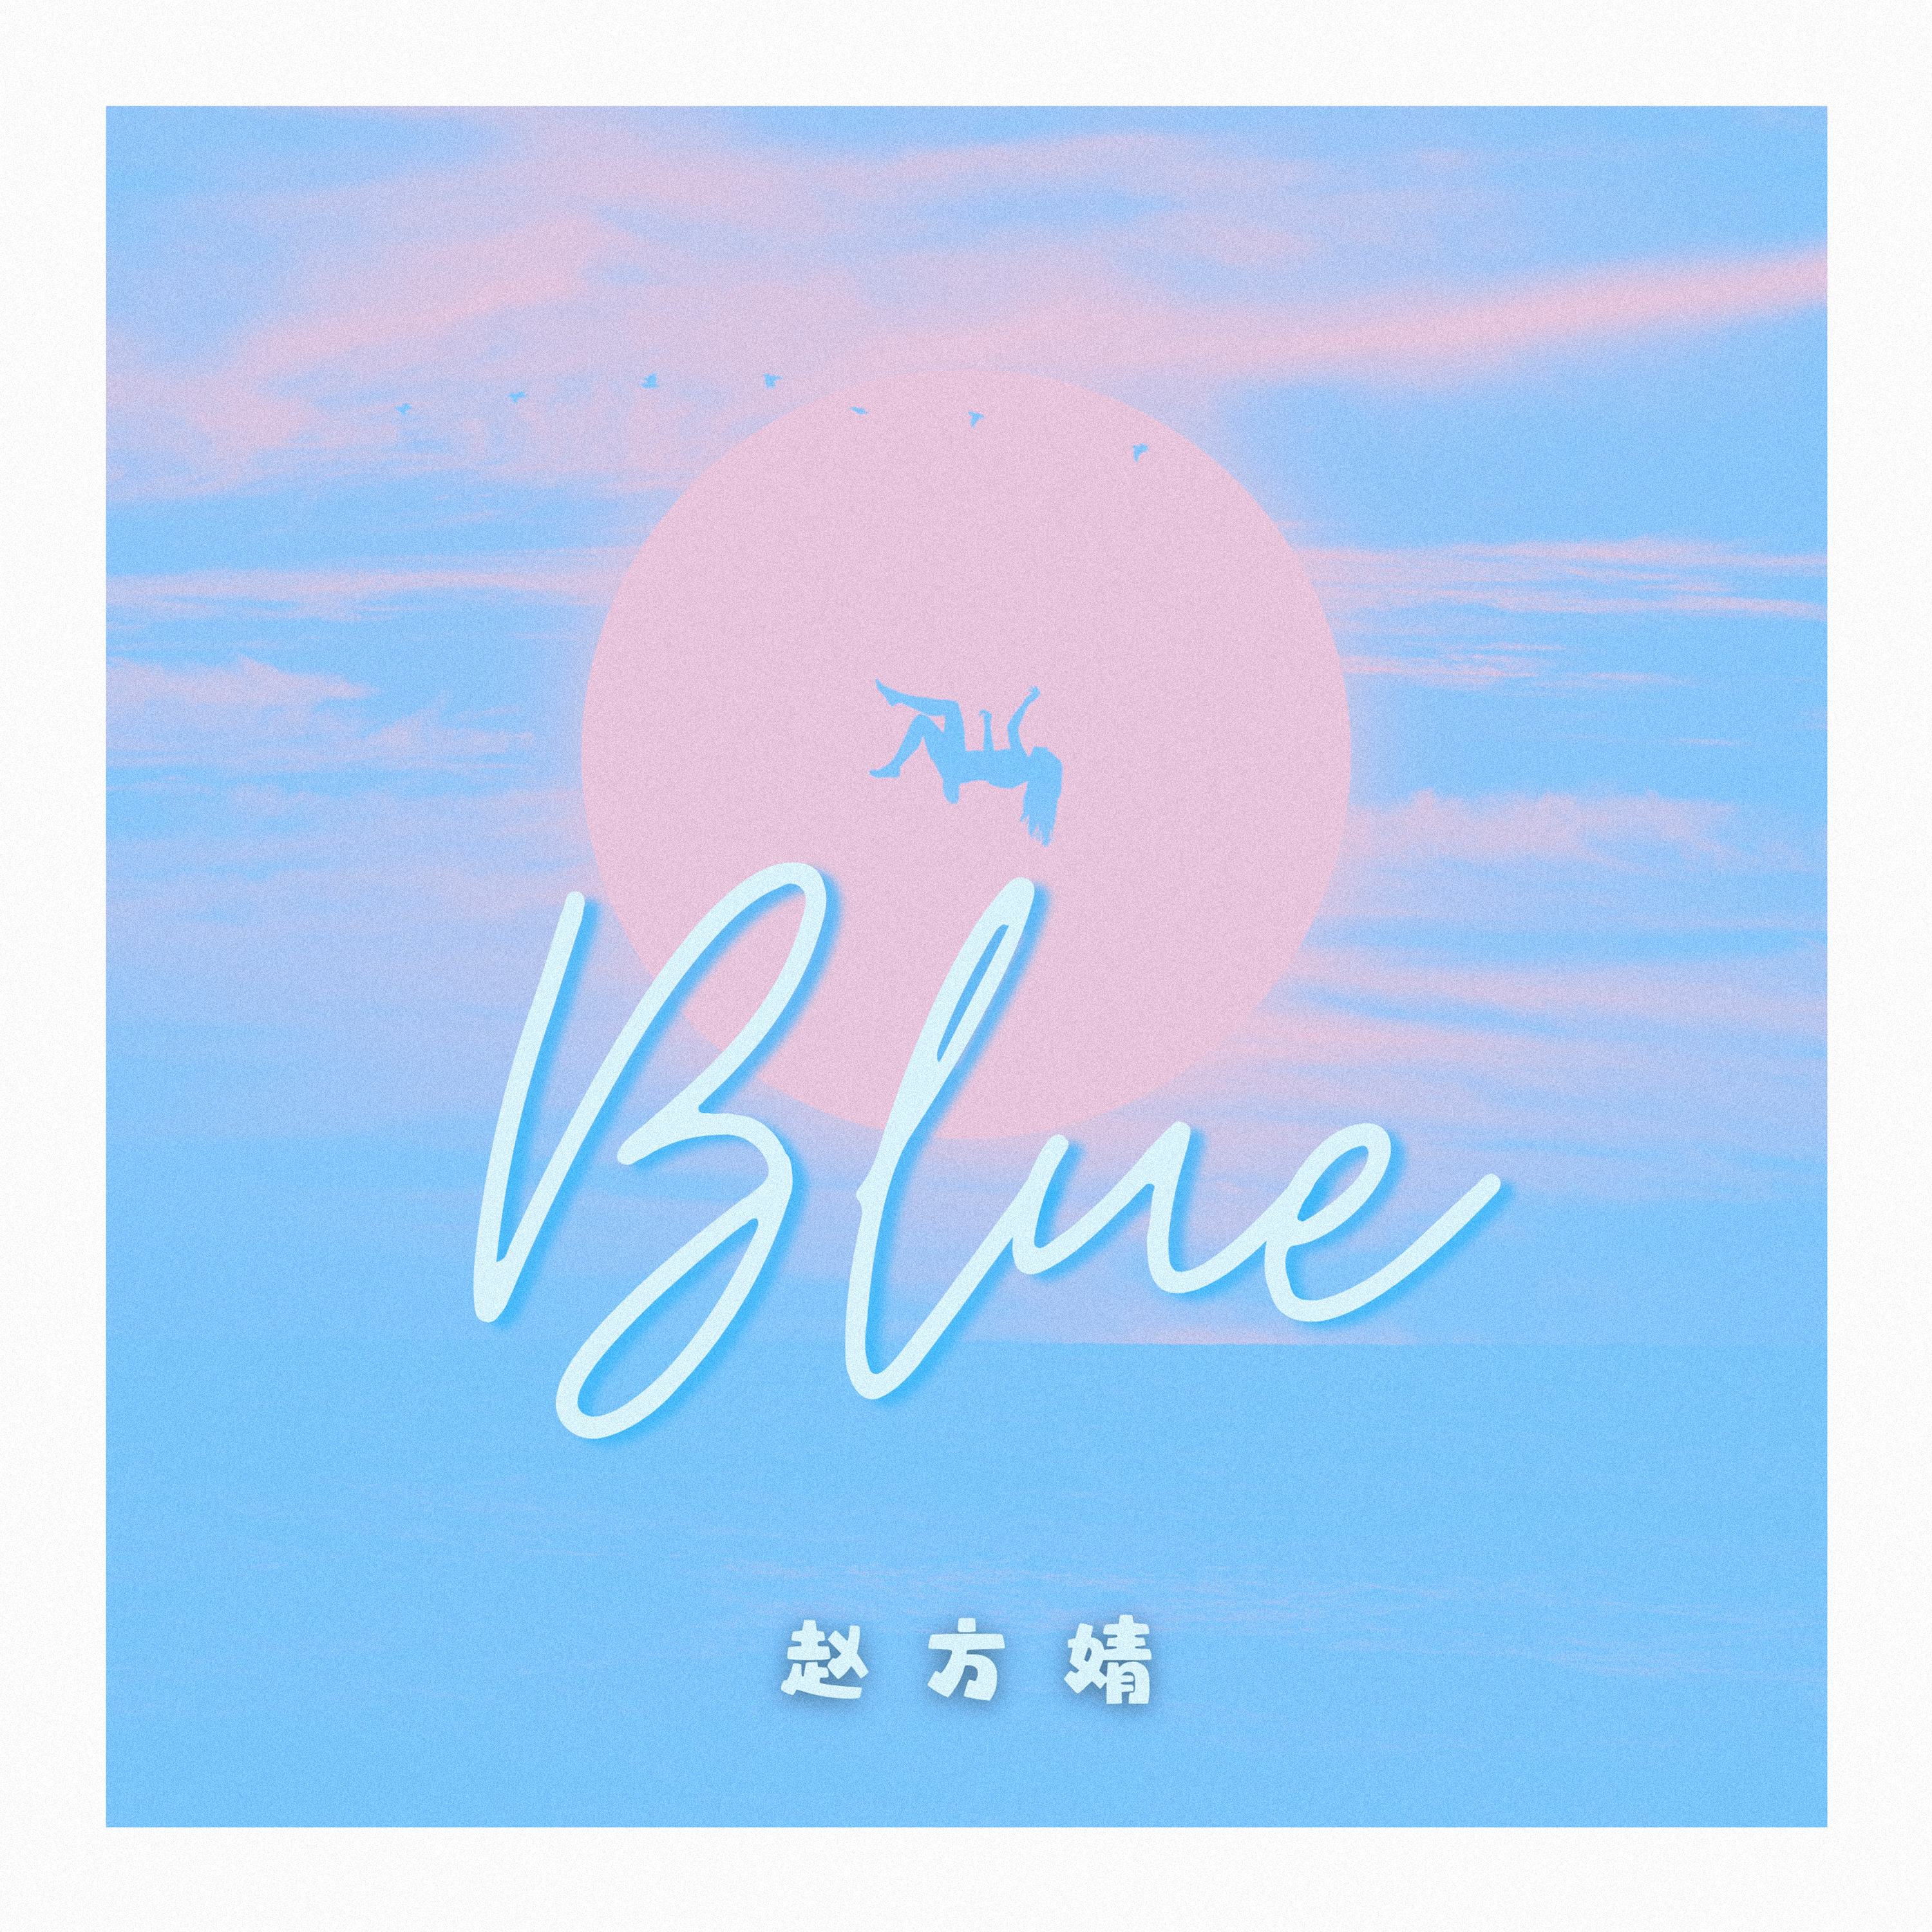 赵方婧 - Blue